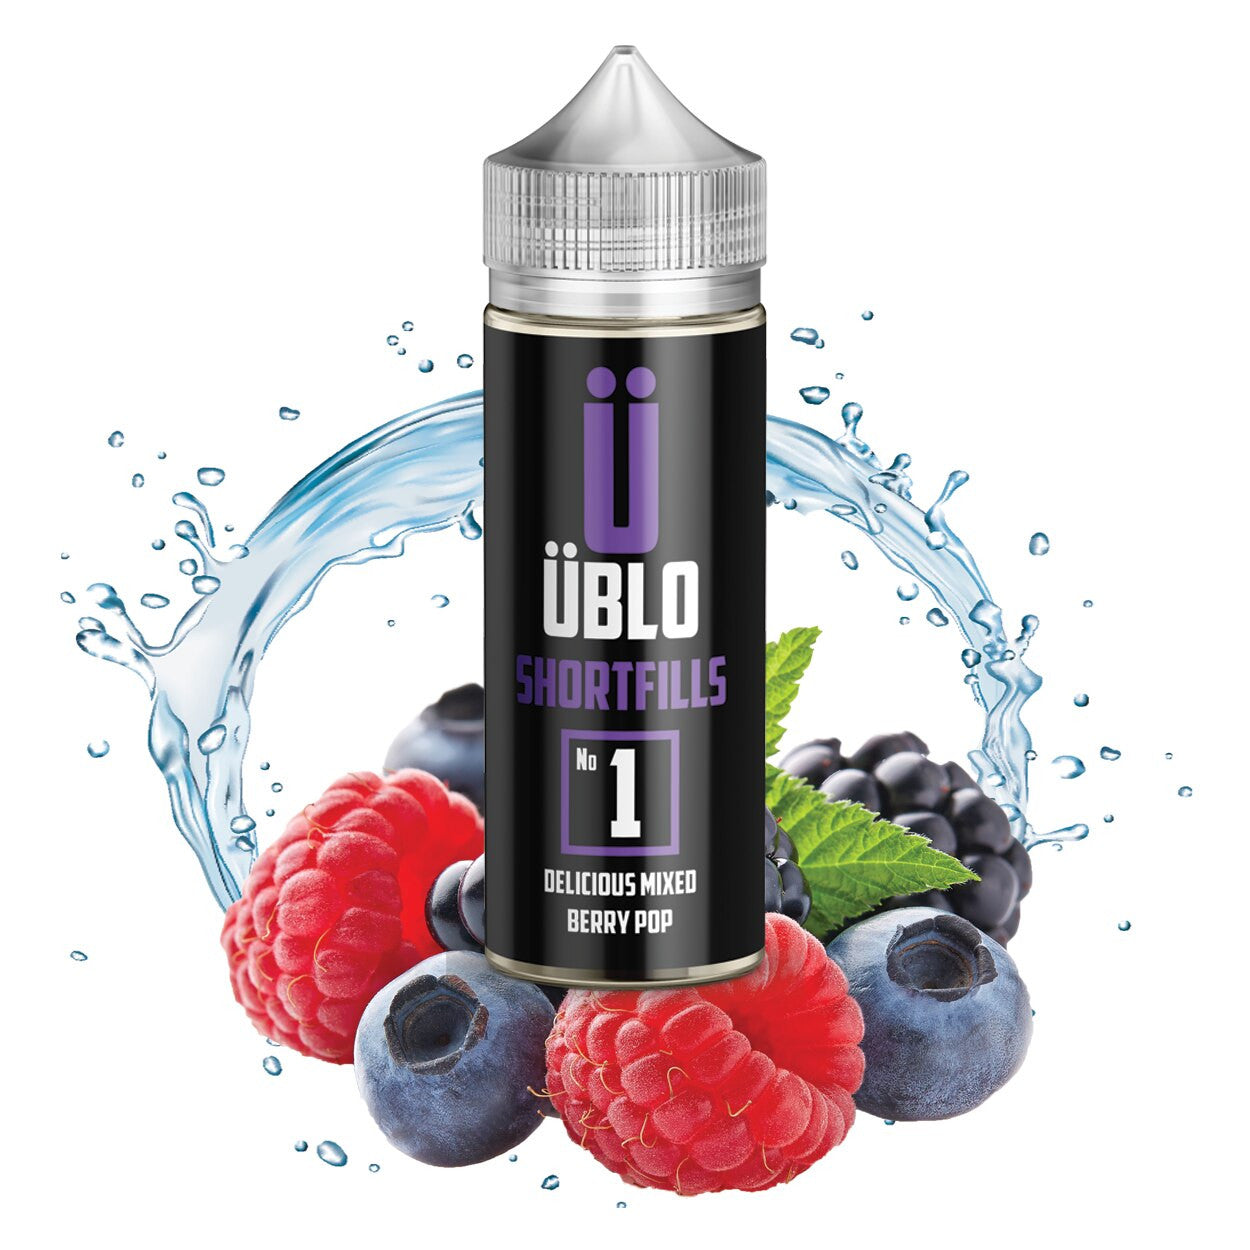 Shortfill E-liquid – No1 Delicious Mixed Berry Pop 120ML